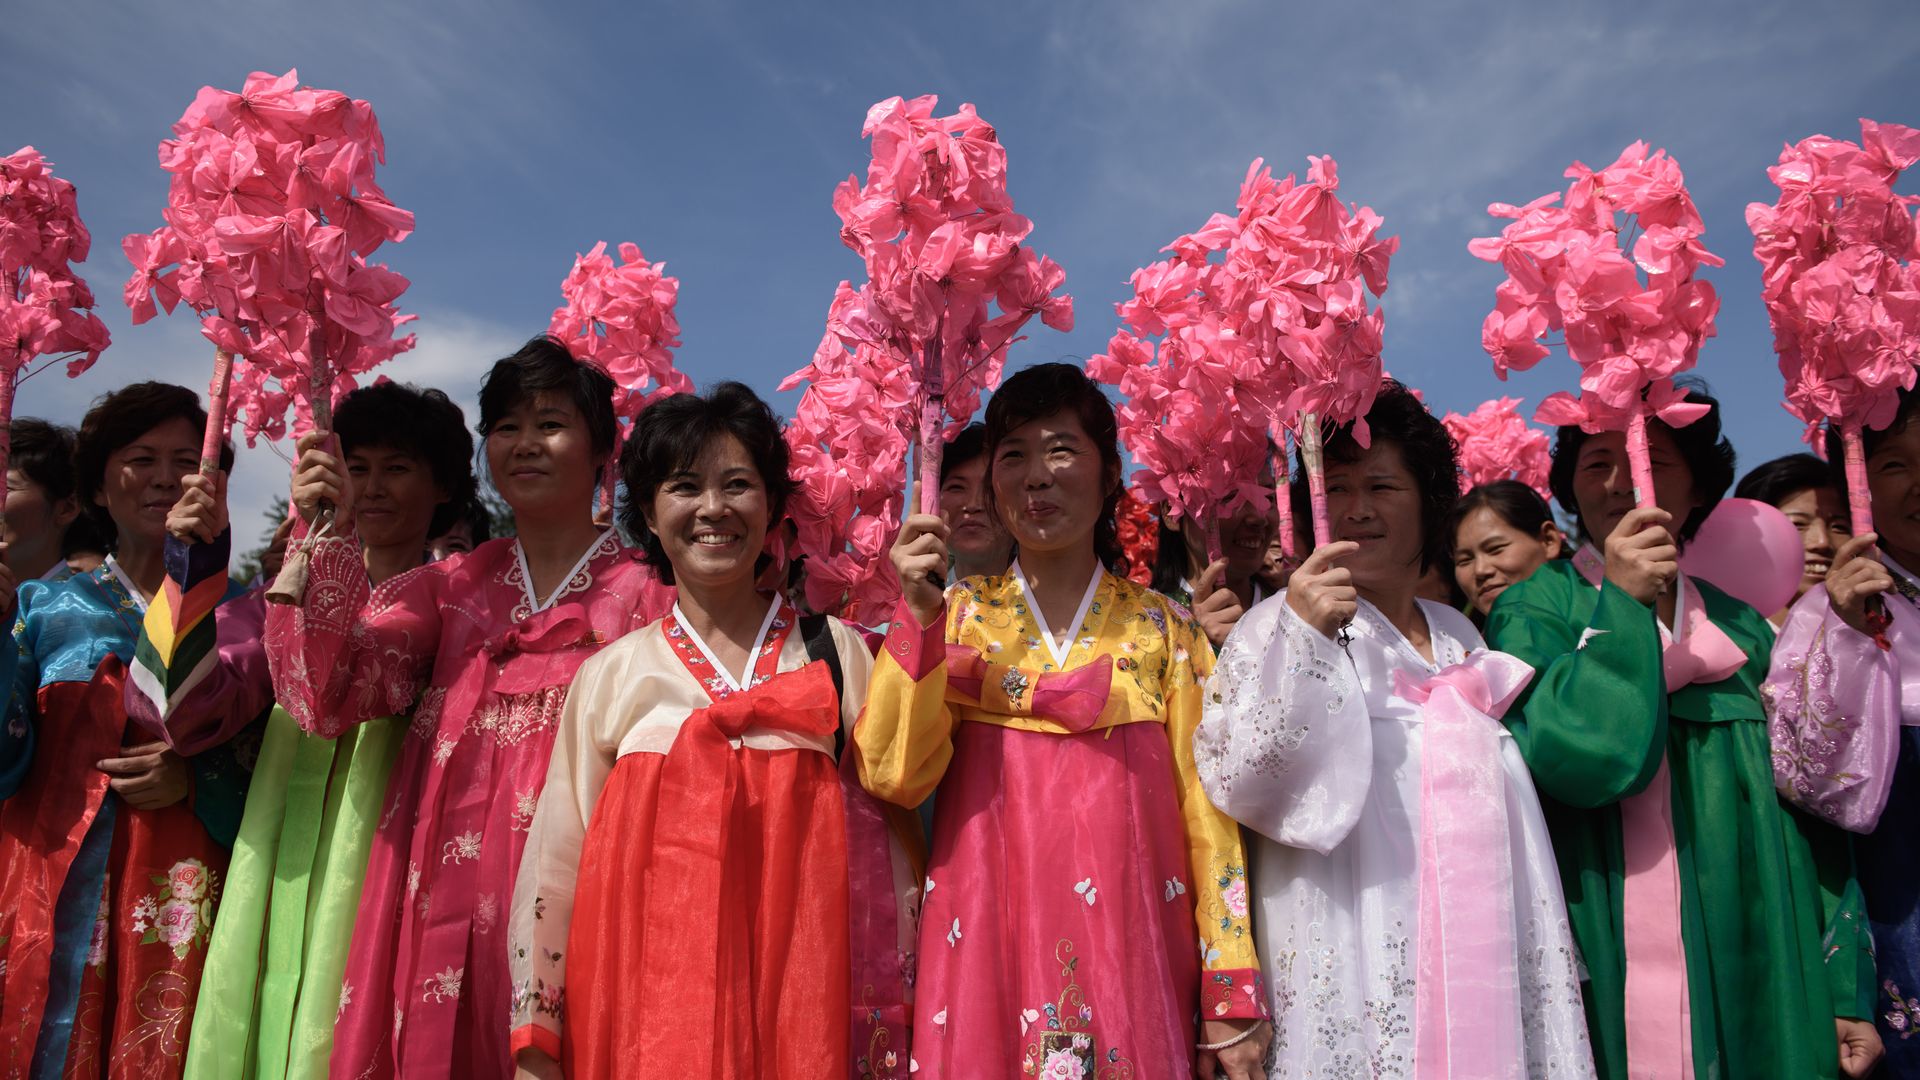 Korean women wearing colorful dresses.